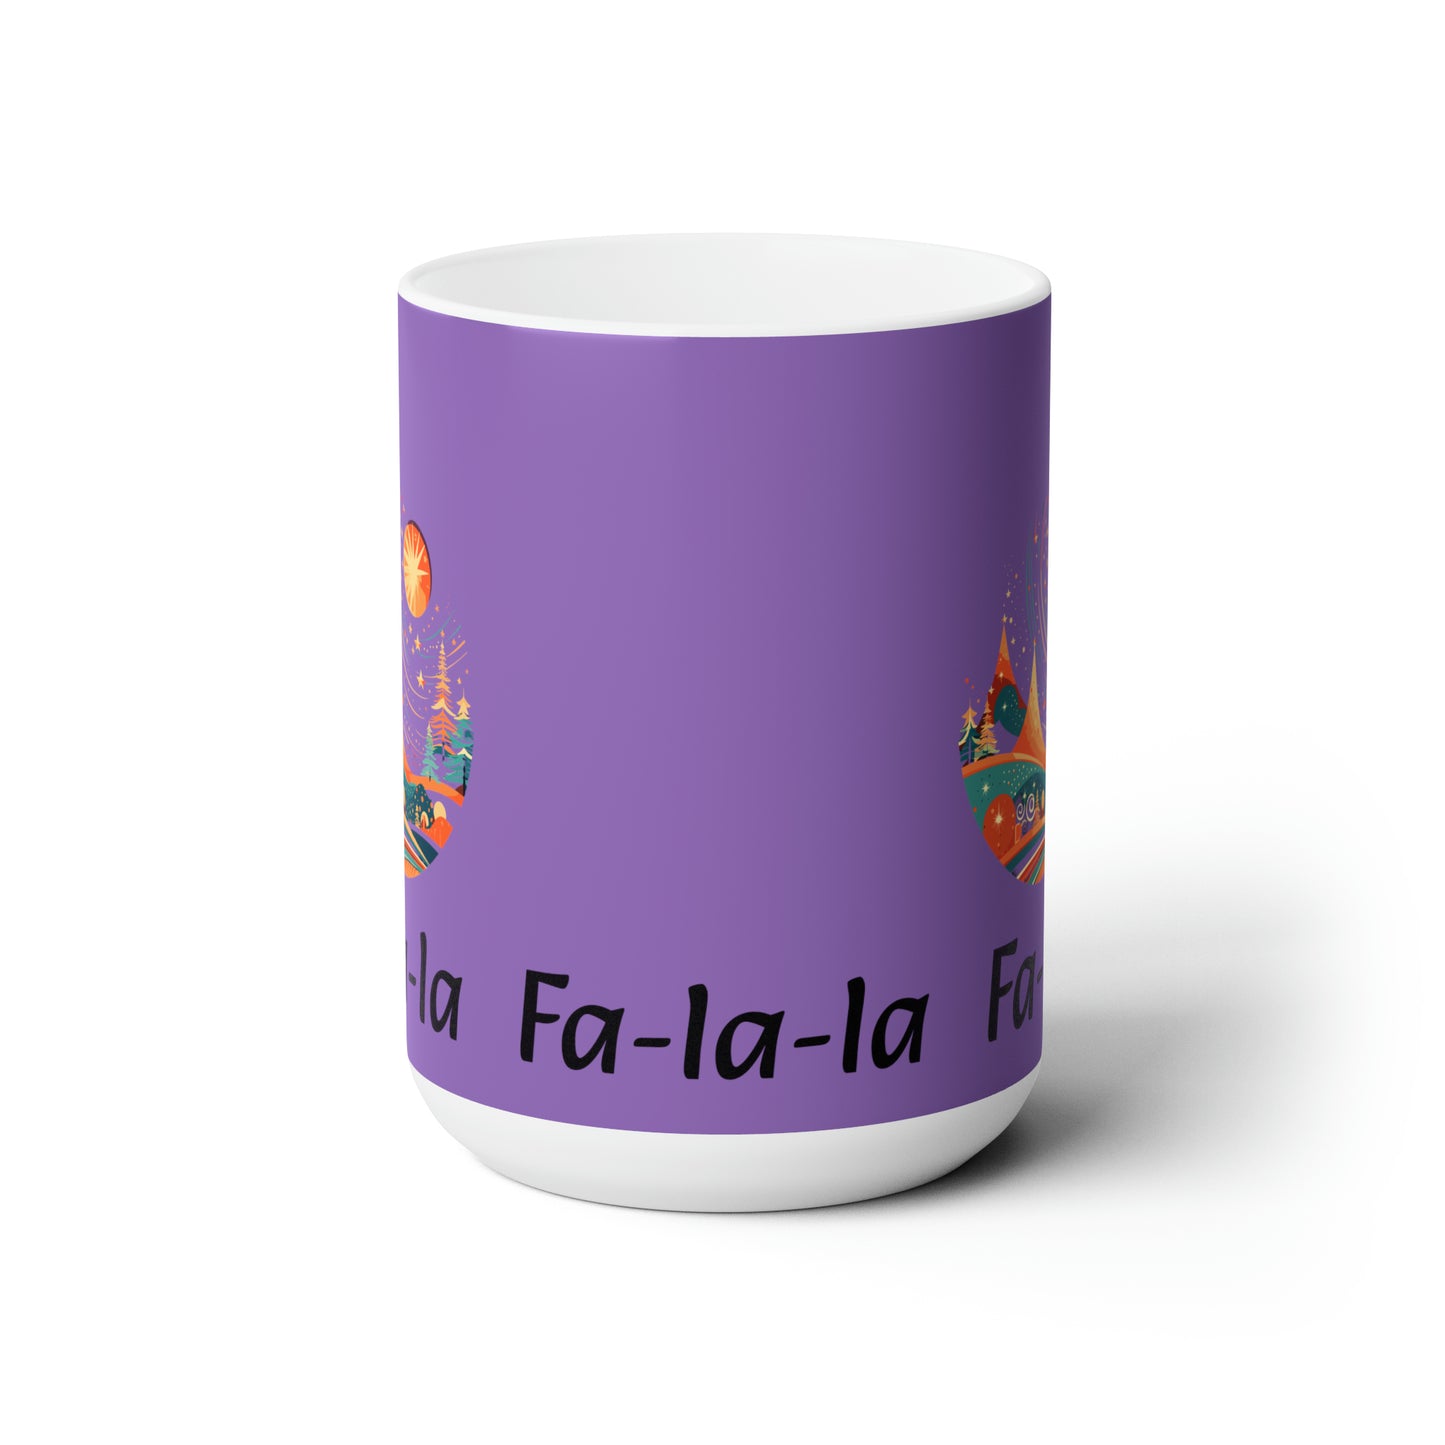 Colorful Christmas and Fa-la-la design Light purple Ceramic Mug 15oz